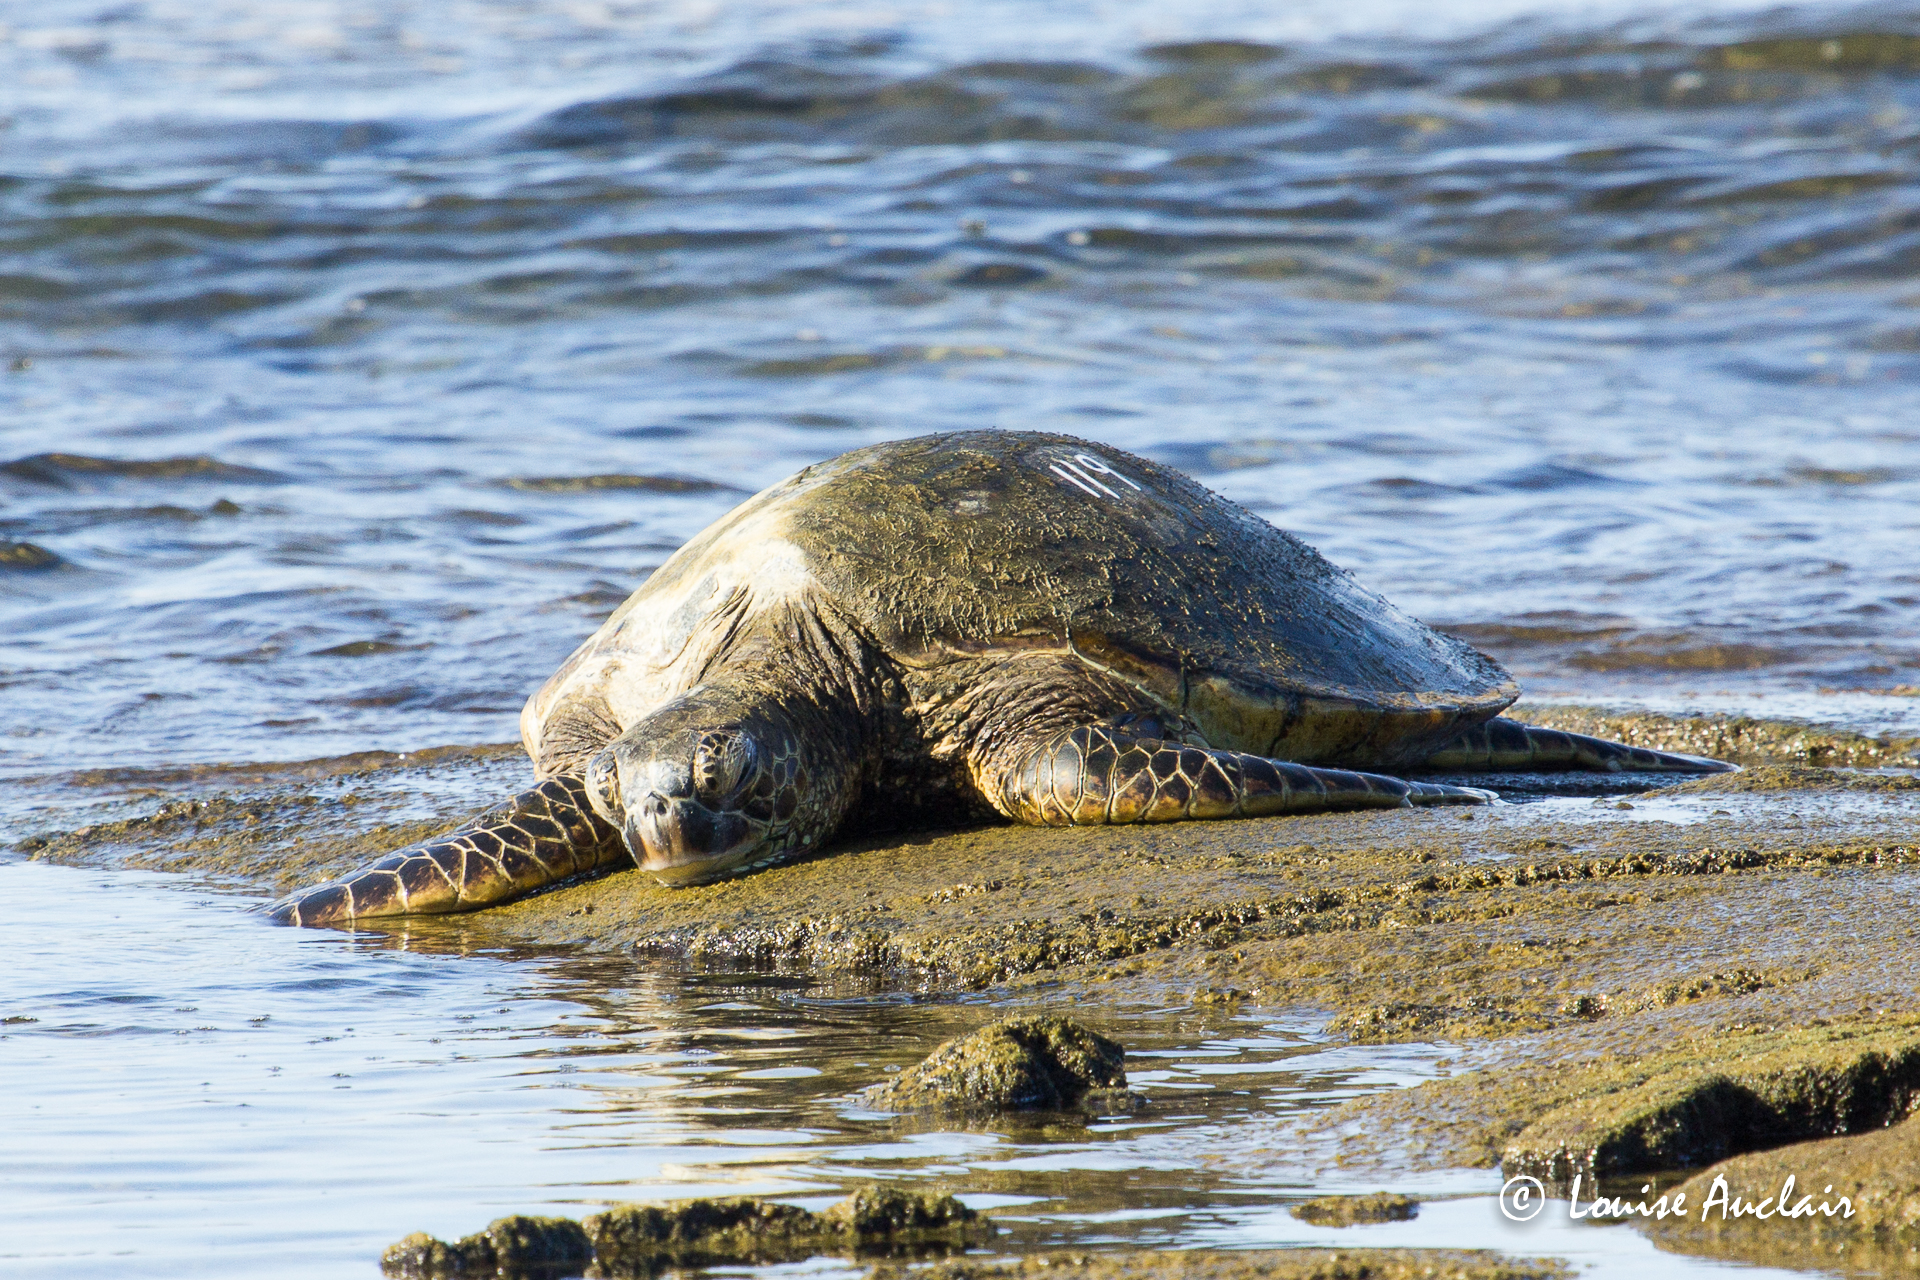 Tortue verte (honu en hawaien) - Green Sea Turtle